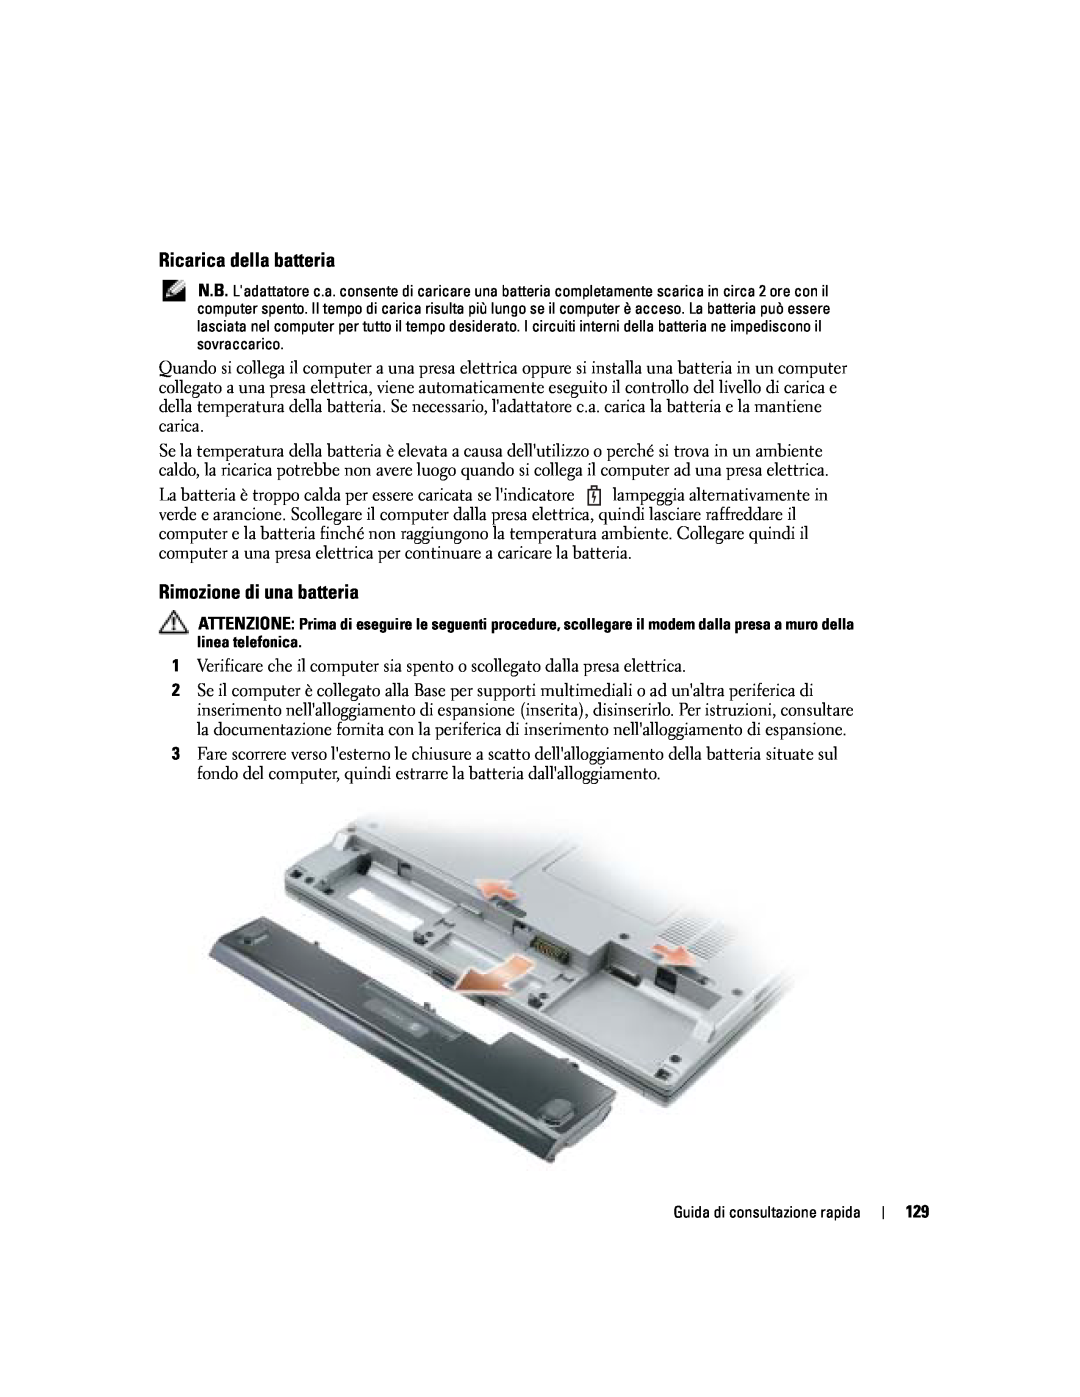 Dell PP06S manual Ricarica della batteria, Rimozione di una batteria 